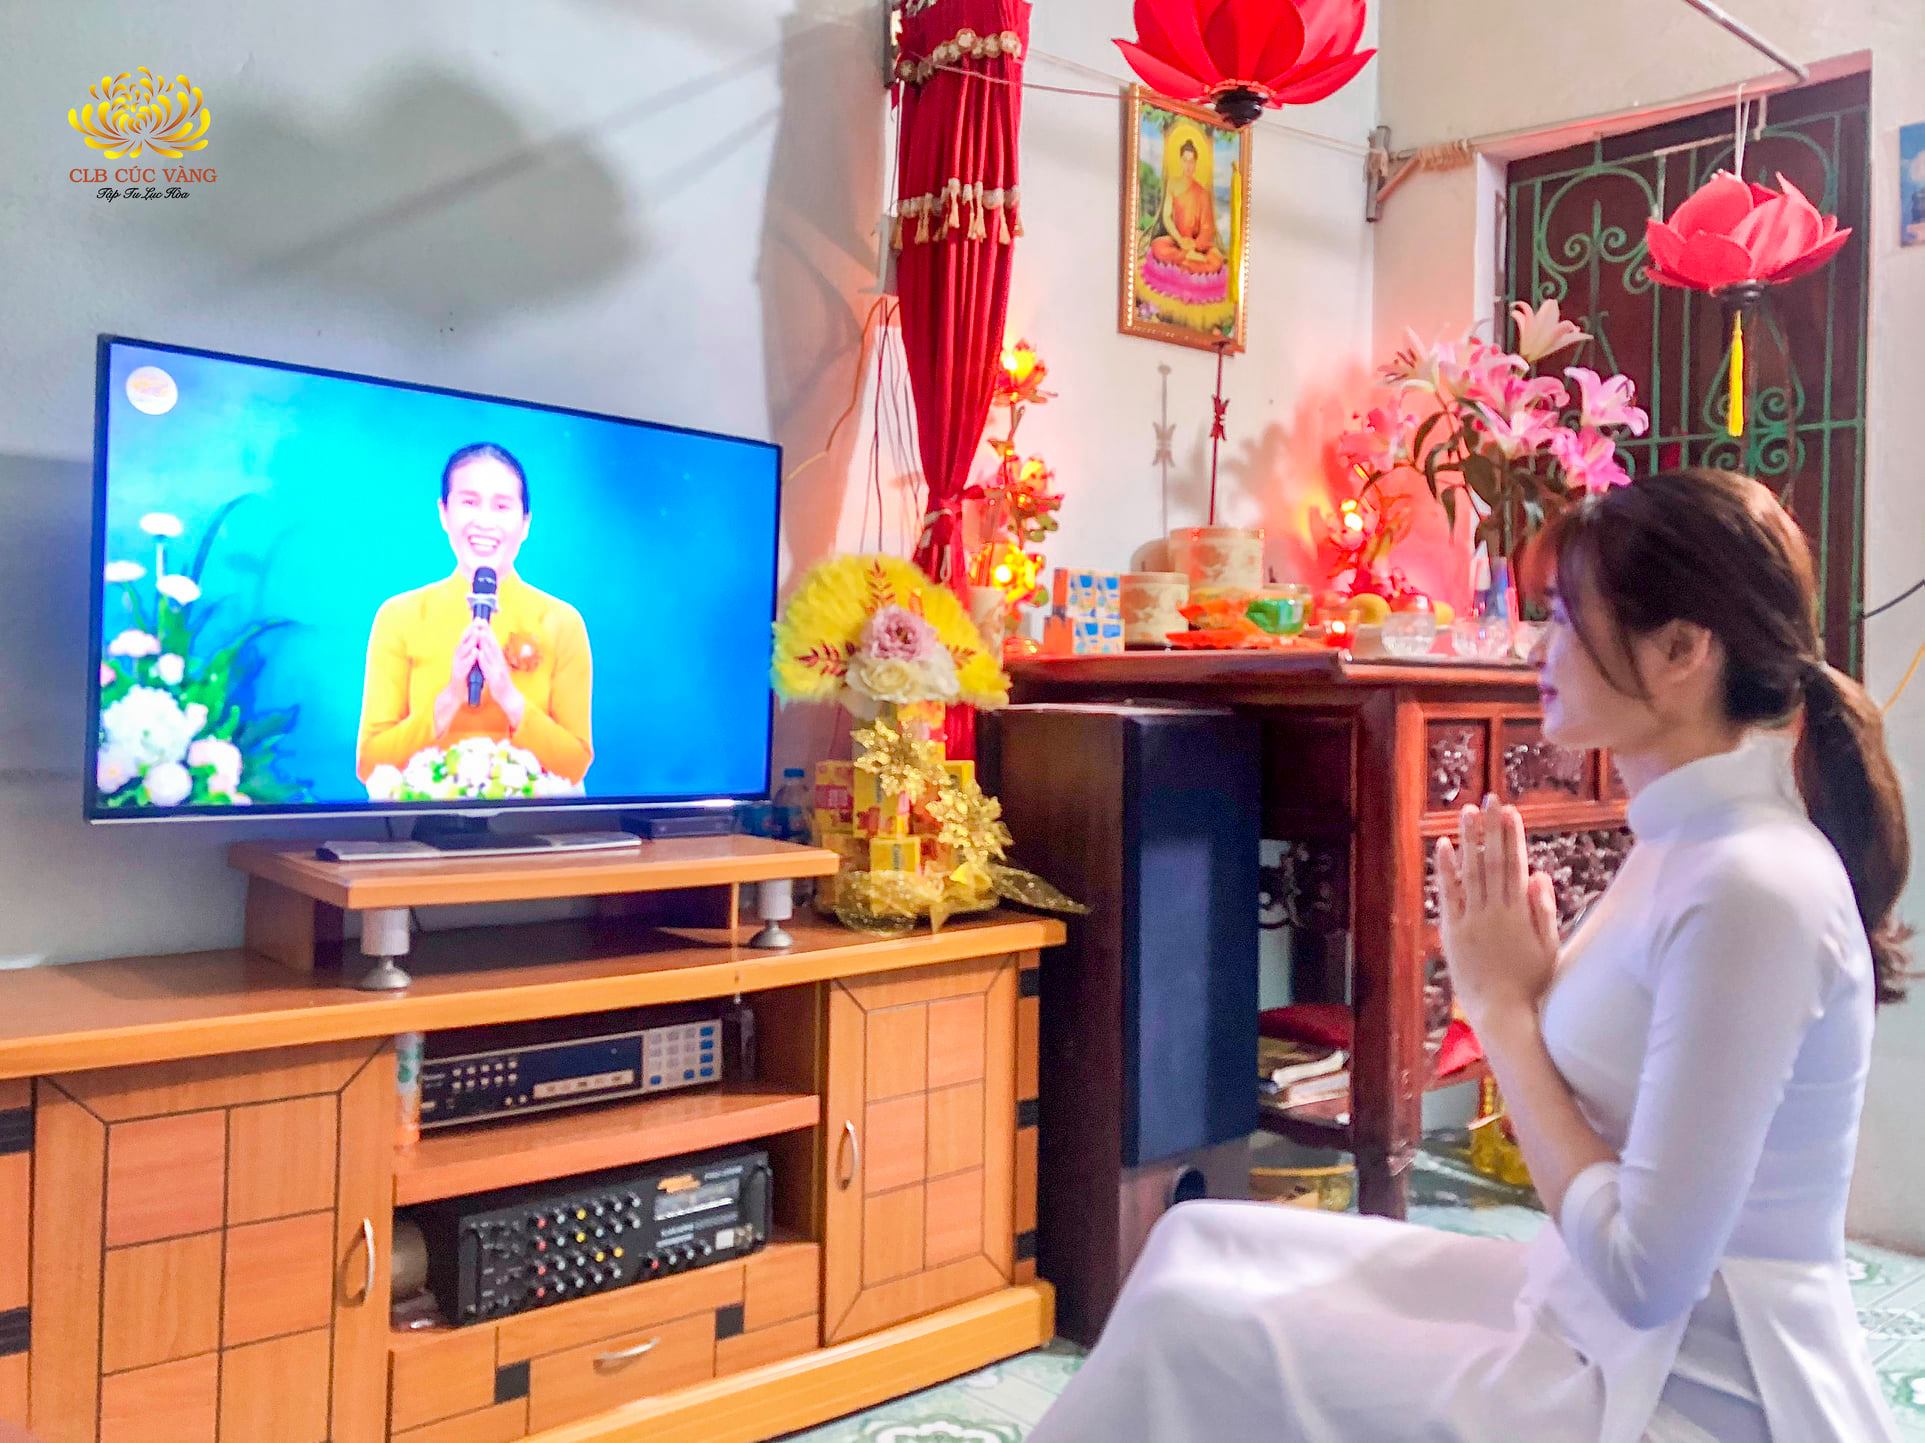 Phật tử đang chăm chú lắng nghe Cô chủ nhiệm chia sẻ về quá trình hình thành, phát triển và phương pháp tu tập của CLB Cúc Vàng.